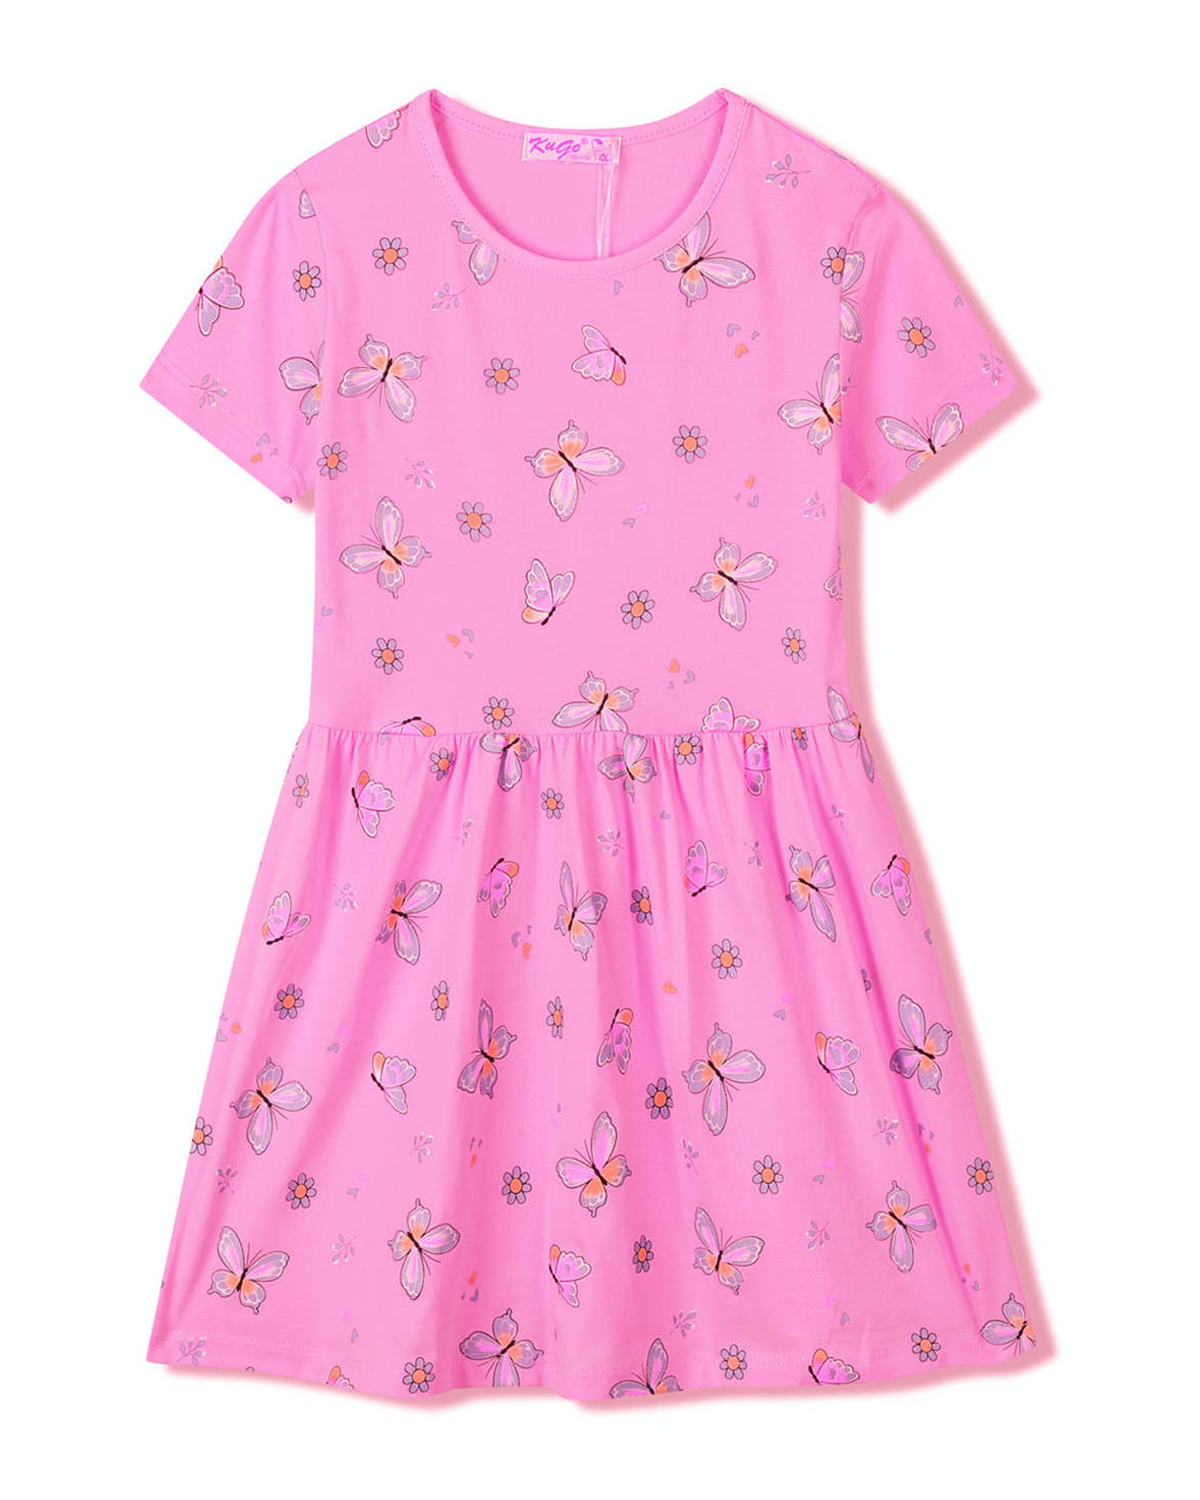 Dívčí šaty - KUGO SH3516, sytě růžová Barva: Růžová, Velikost: 104